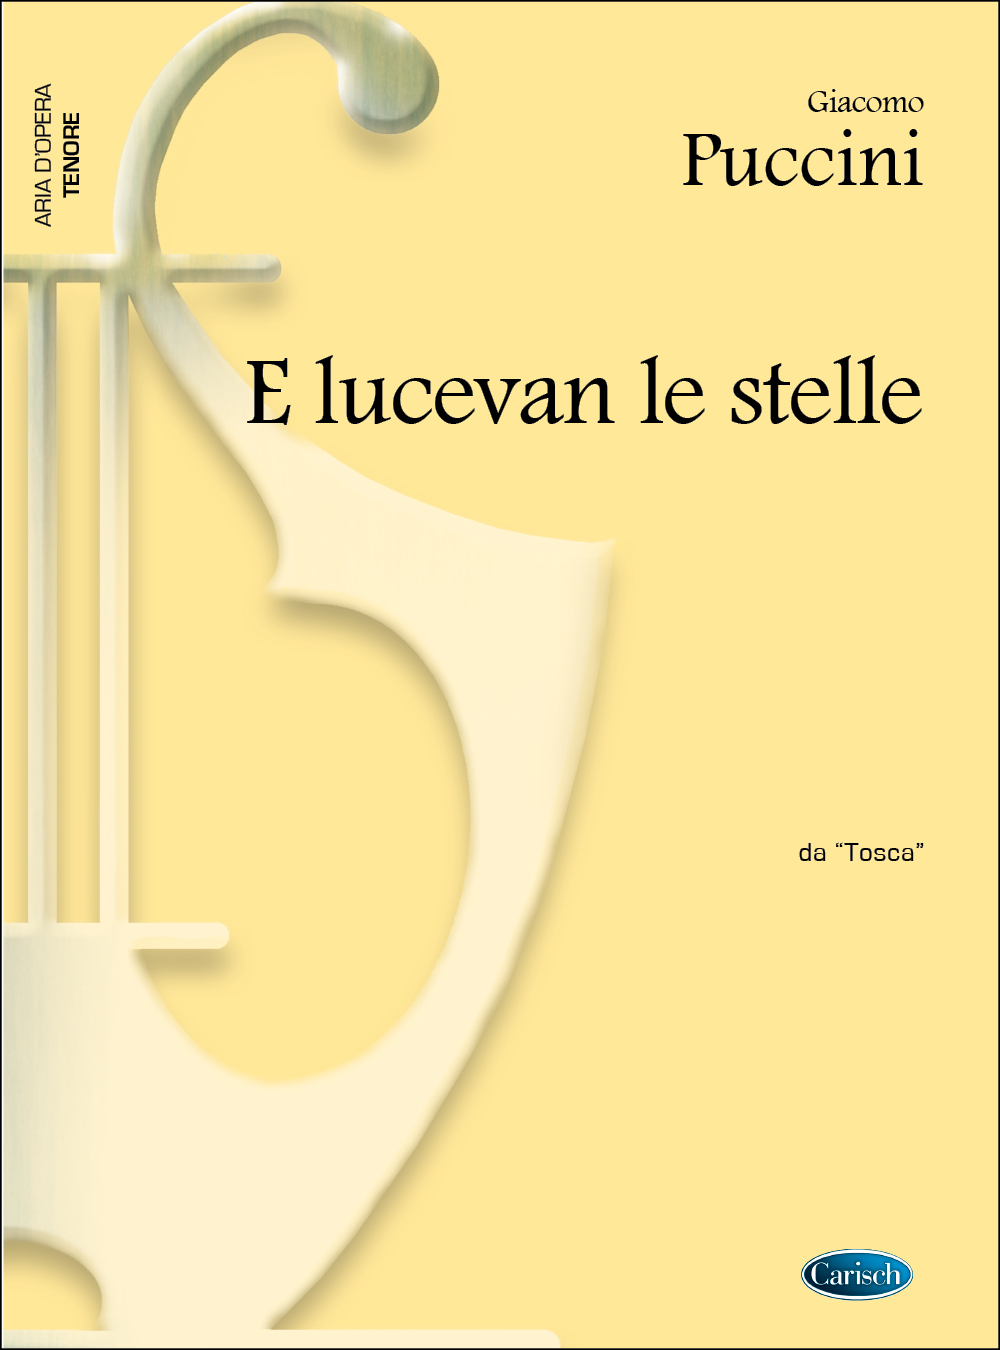 Giacomo Puccini: E lucevan le stelle  da Tosca: Tenor: Single Sheet